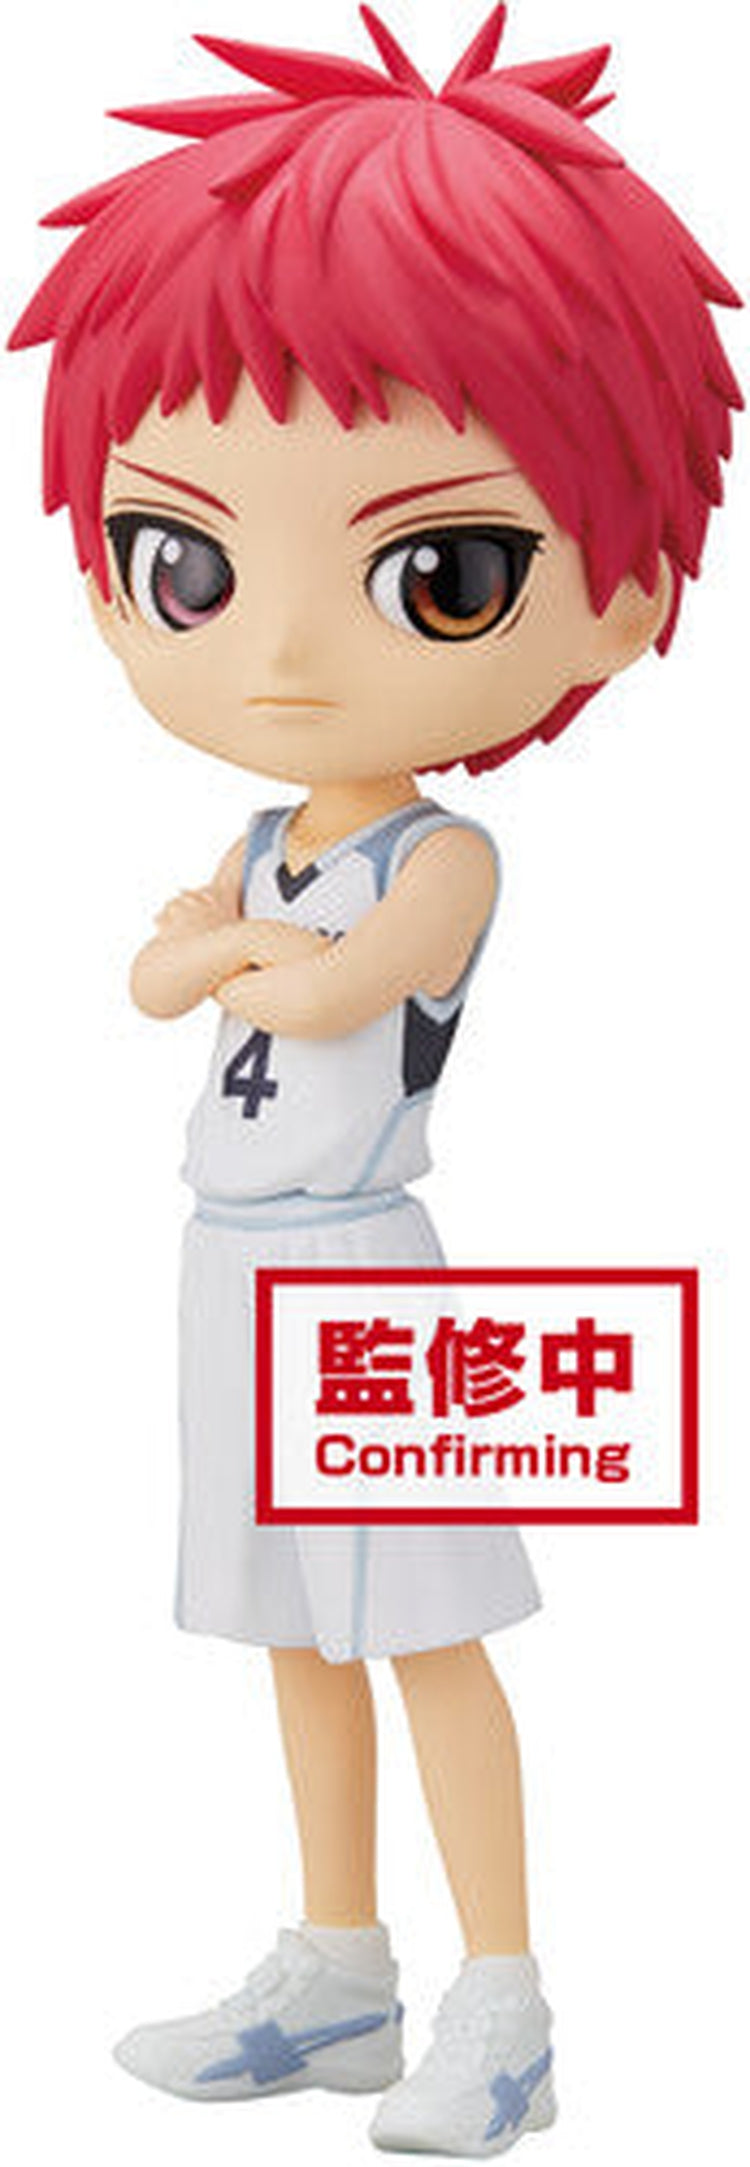 BanPresto - Kuroko's Basketball - Q Posket - Seijuro Akashi Tetsuya Kuroko (Movie Version ) (A: Seijuro Akashi) Statue